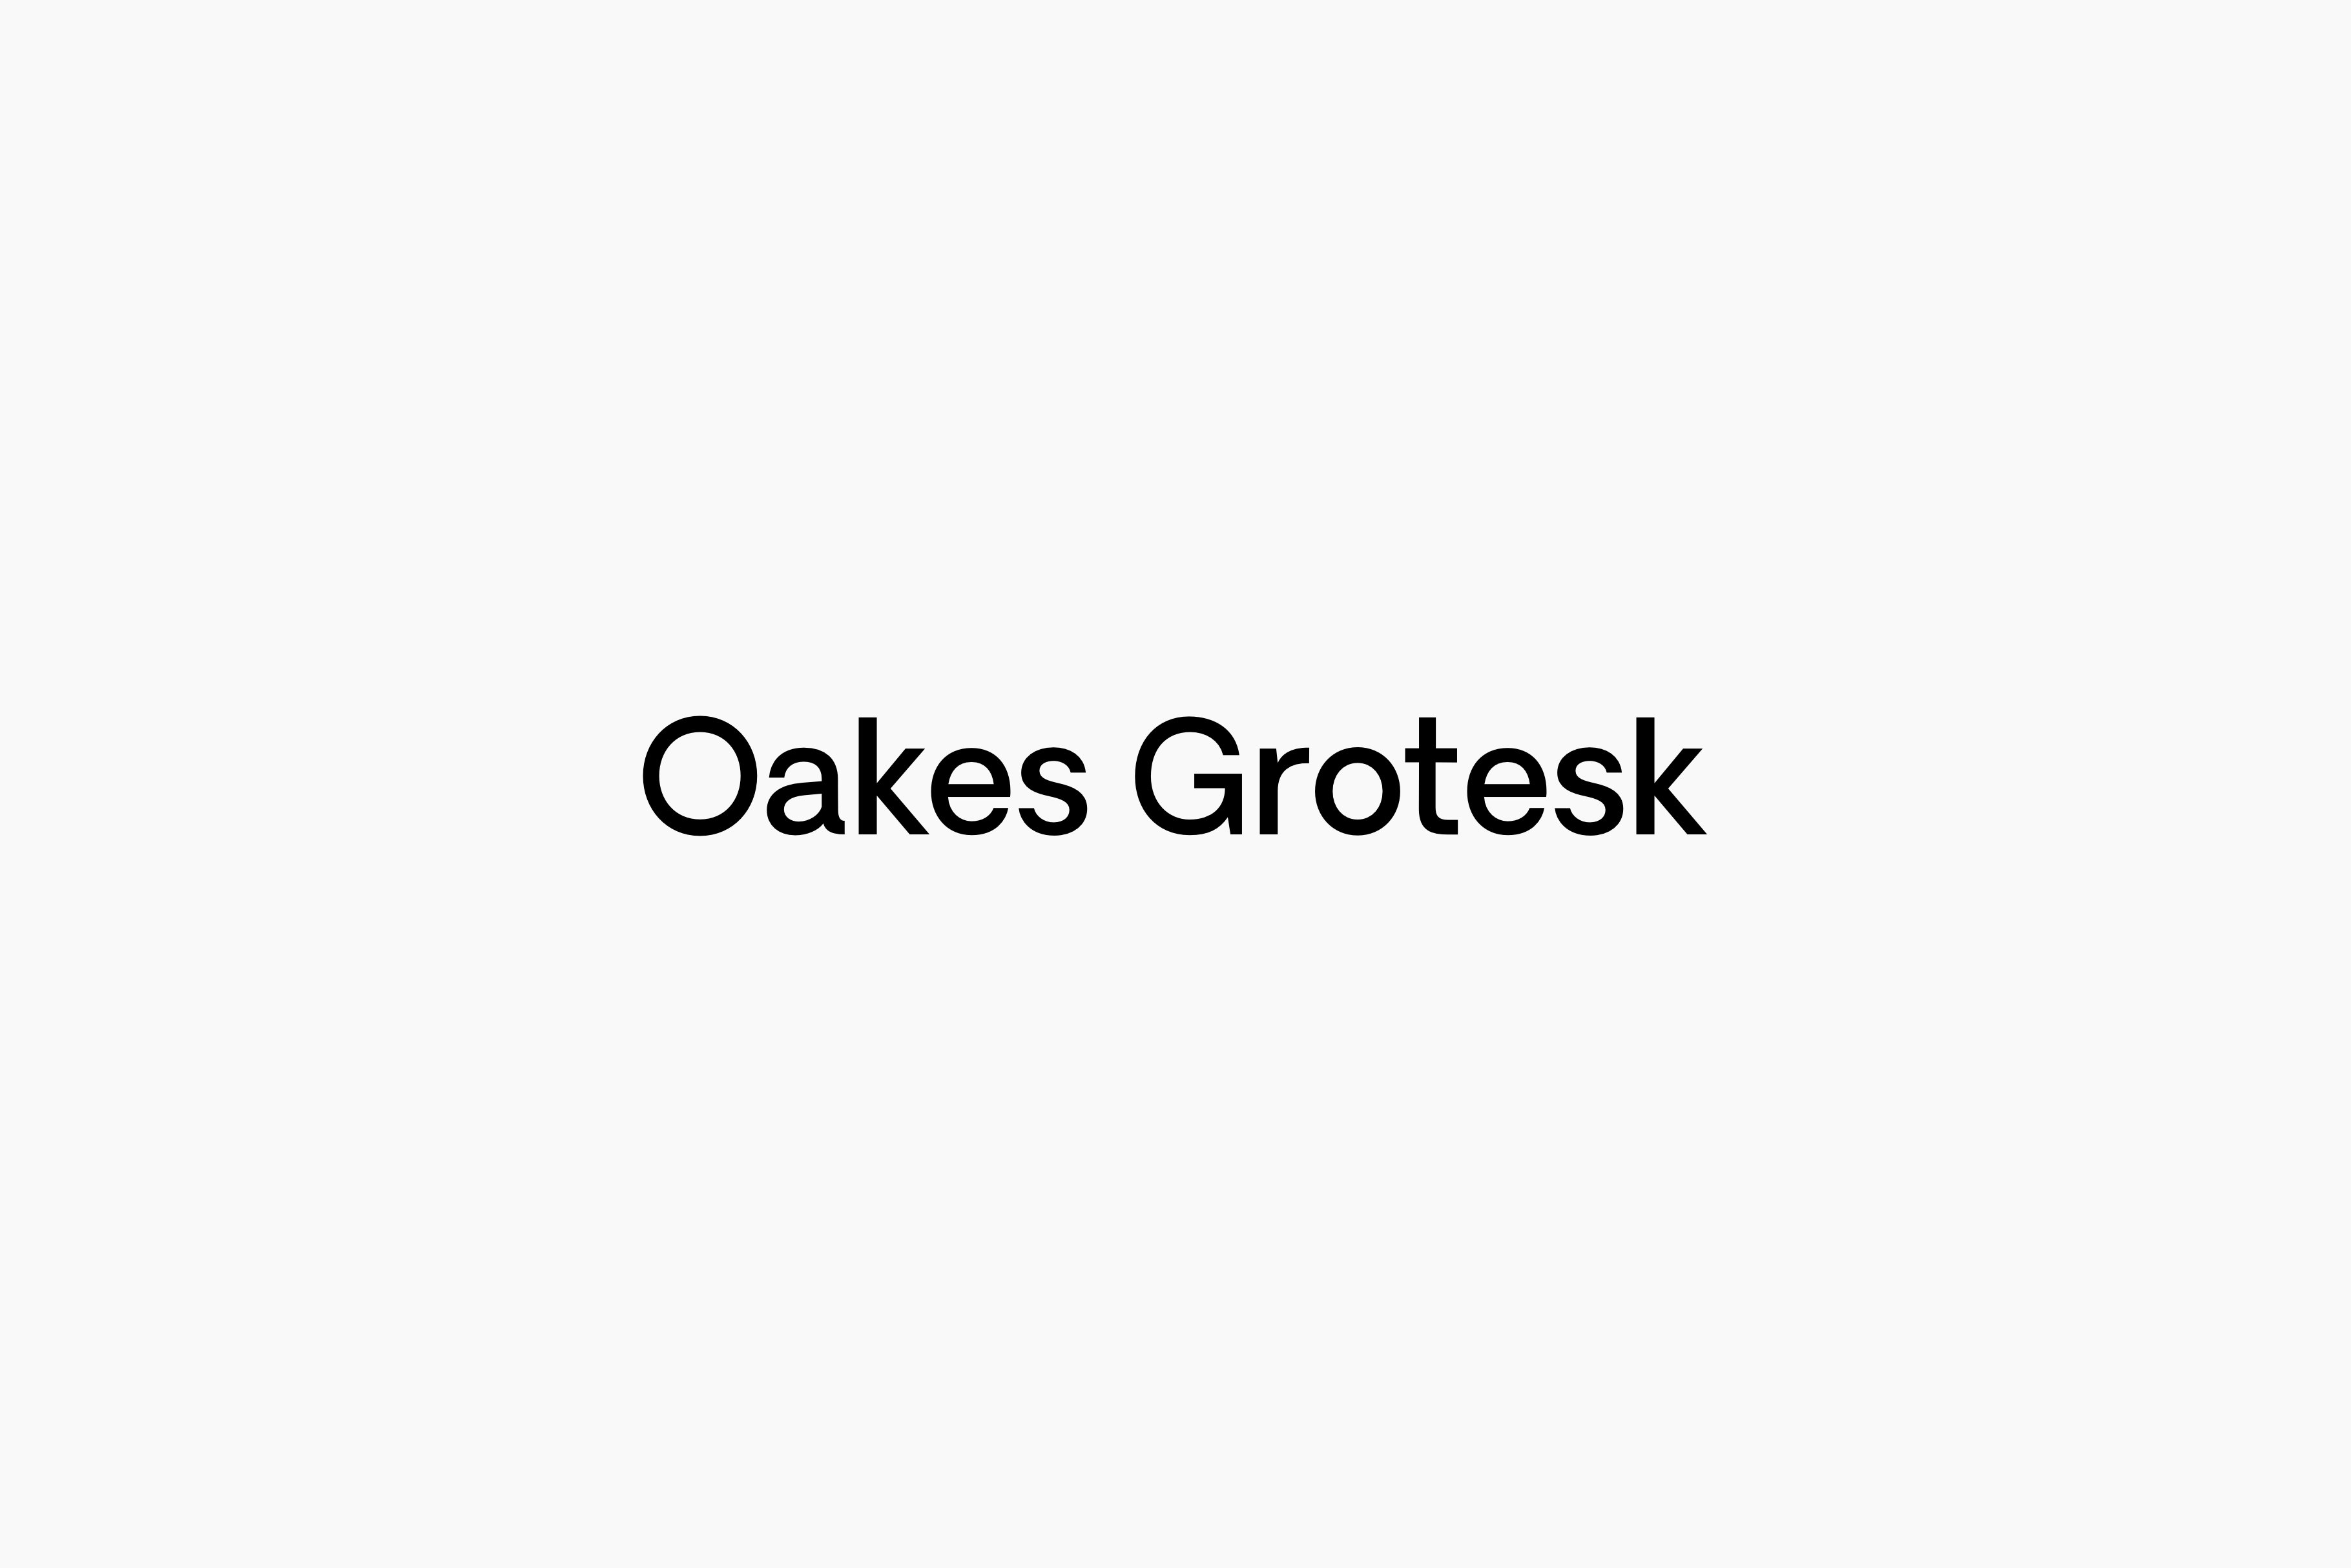 Oakes Grotesk - Full Family cover image.